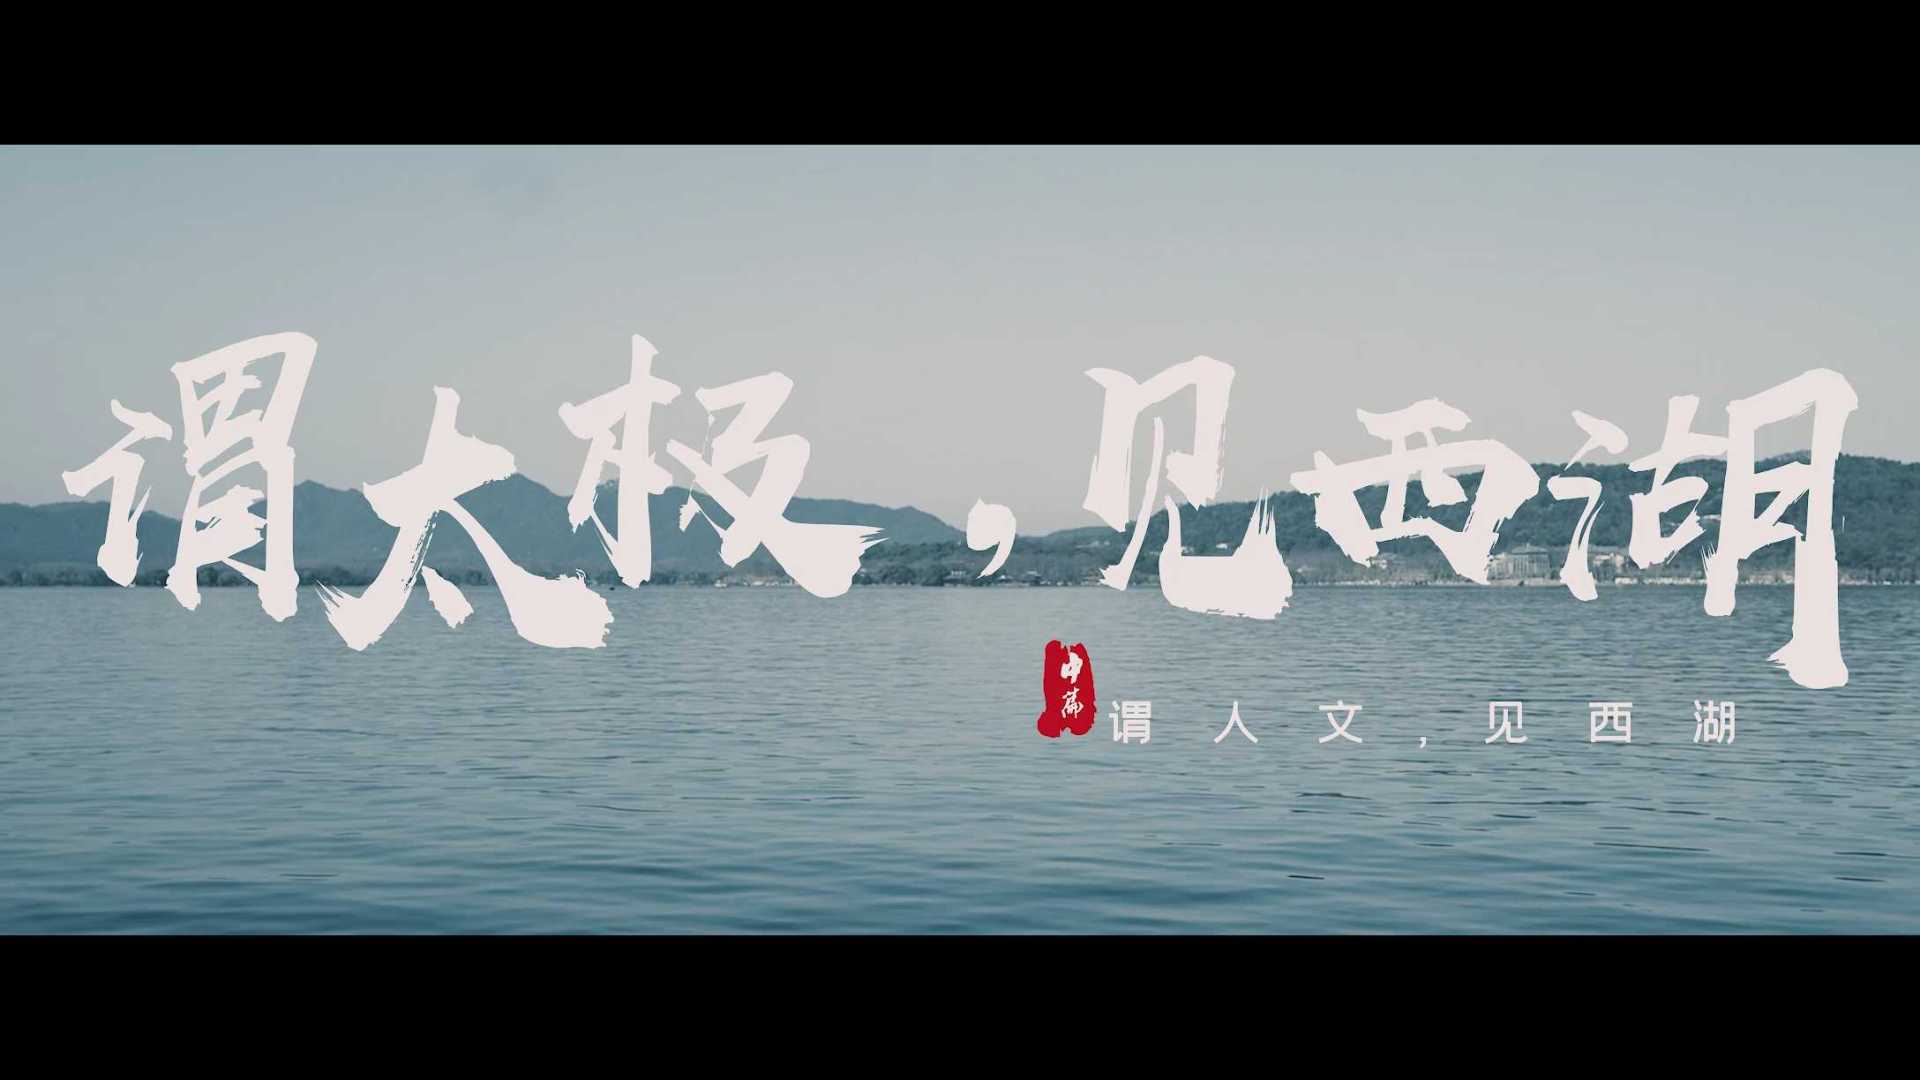 「谓太极，见西湖」杭州西湖投资峰会宣传片